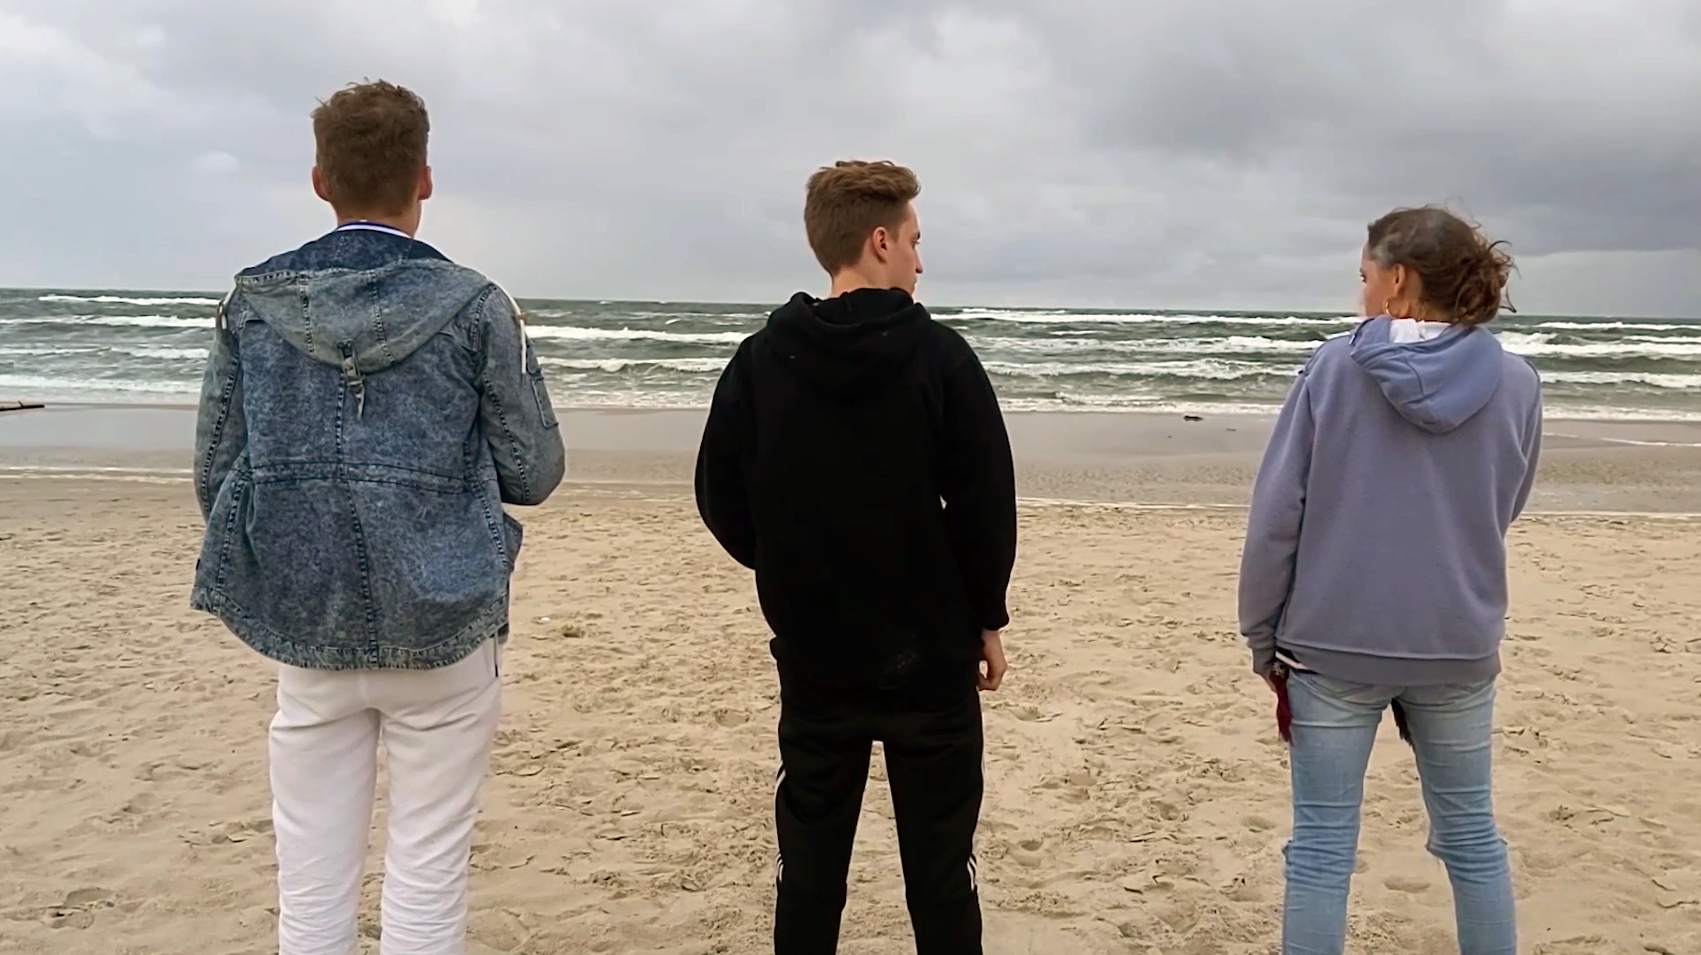 Drei junge Menschen stehen am Strand und schauen aufs Meer.